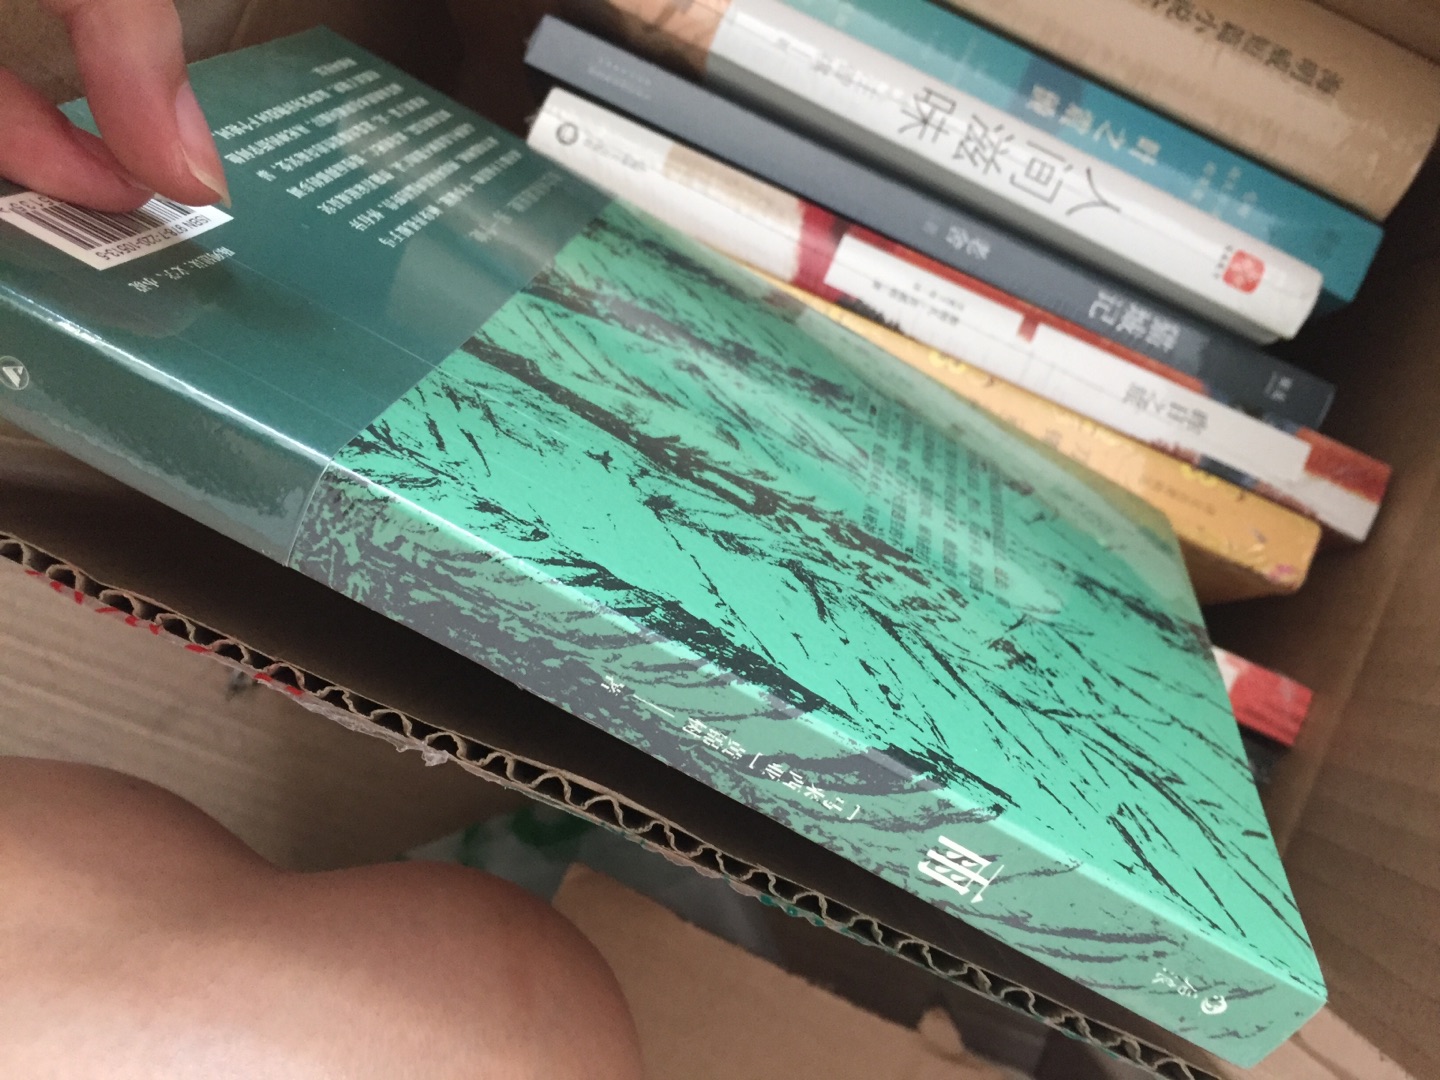 最近豆瓣虚构类书籍新书榜上的好书，马来西亚人黄锦树的书，豆瓣8.6分千余人评分，可见是一本不错的书，内容富含魔幻色彩，讲述了一家四口不同平行世界的不同故事与结局。后浪书籍，简装的小本子，此书封面设计给人一种热带雨林中满目幽绿的感觉